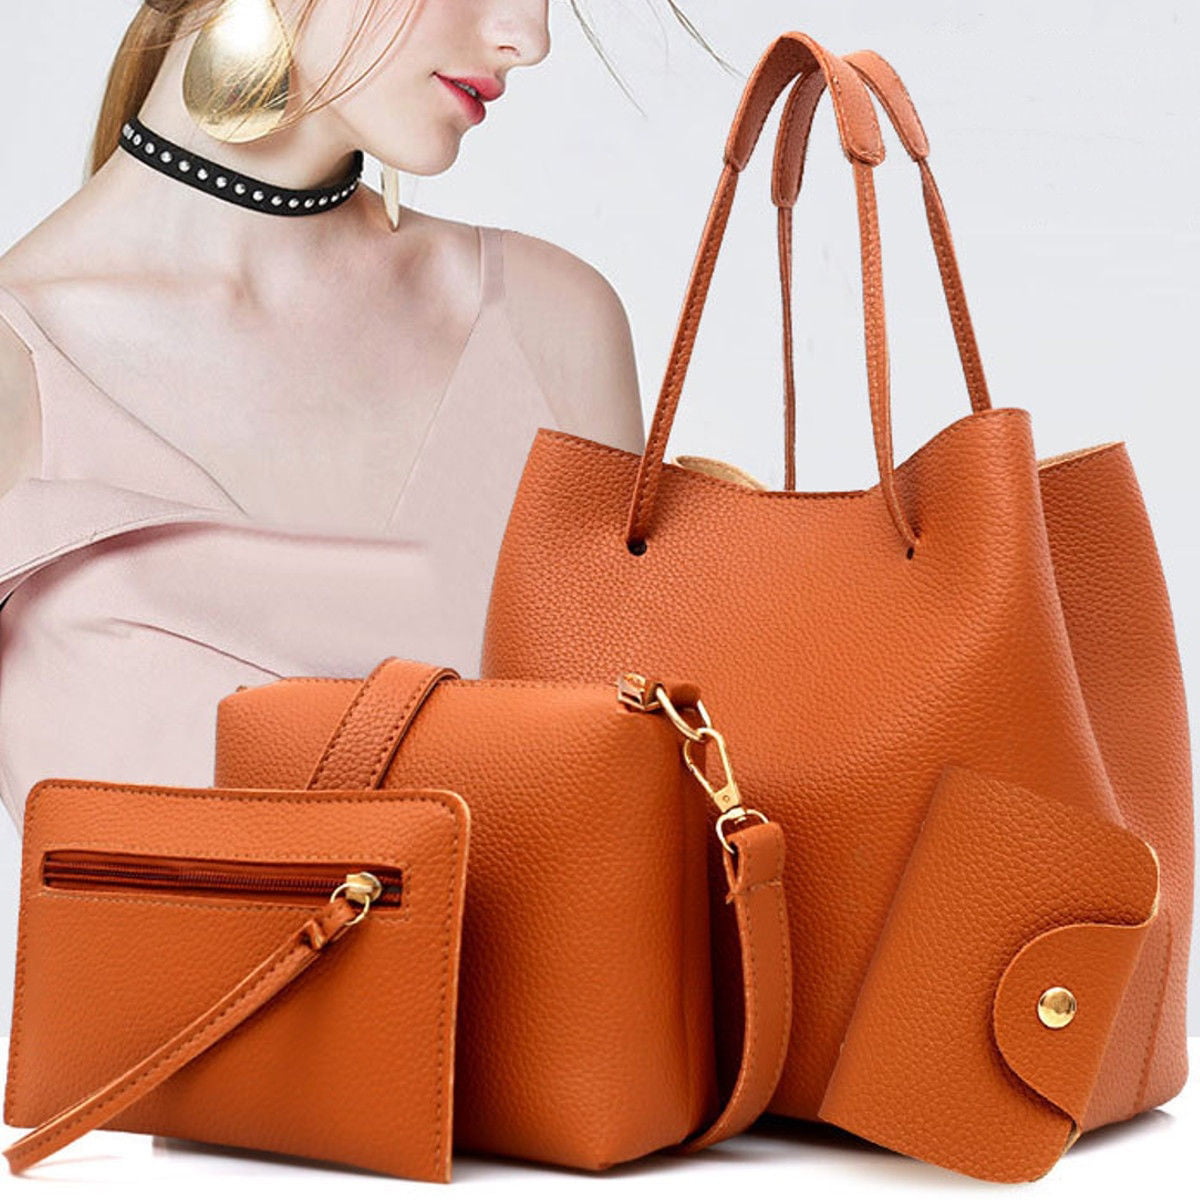 4PCS Women Lady Leather Handbag Shoulder Bags Tote Purse Messenger Satchel Set 2 